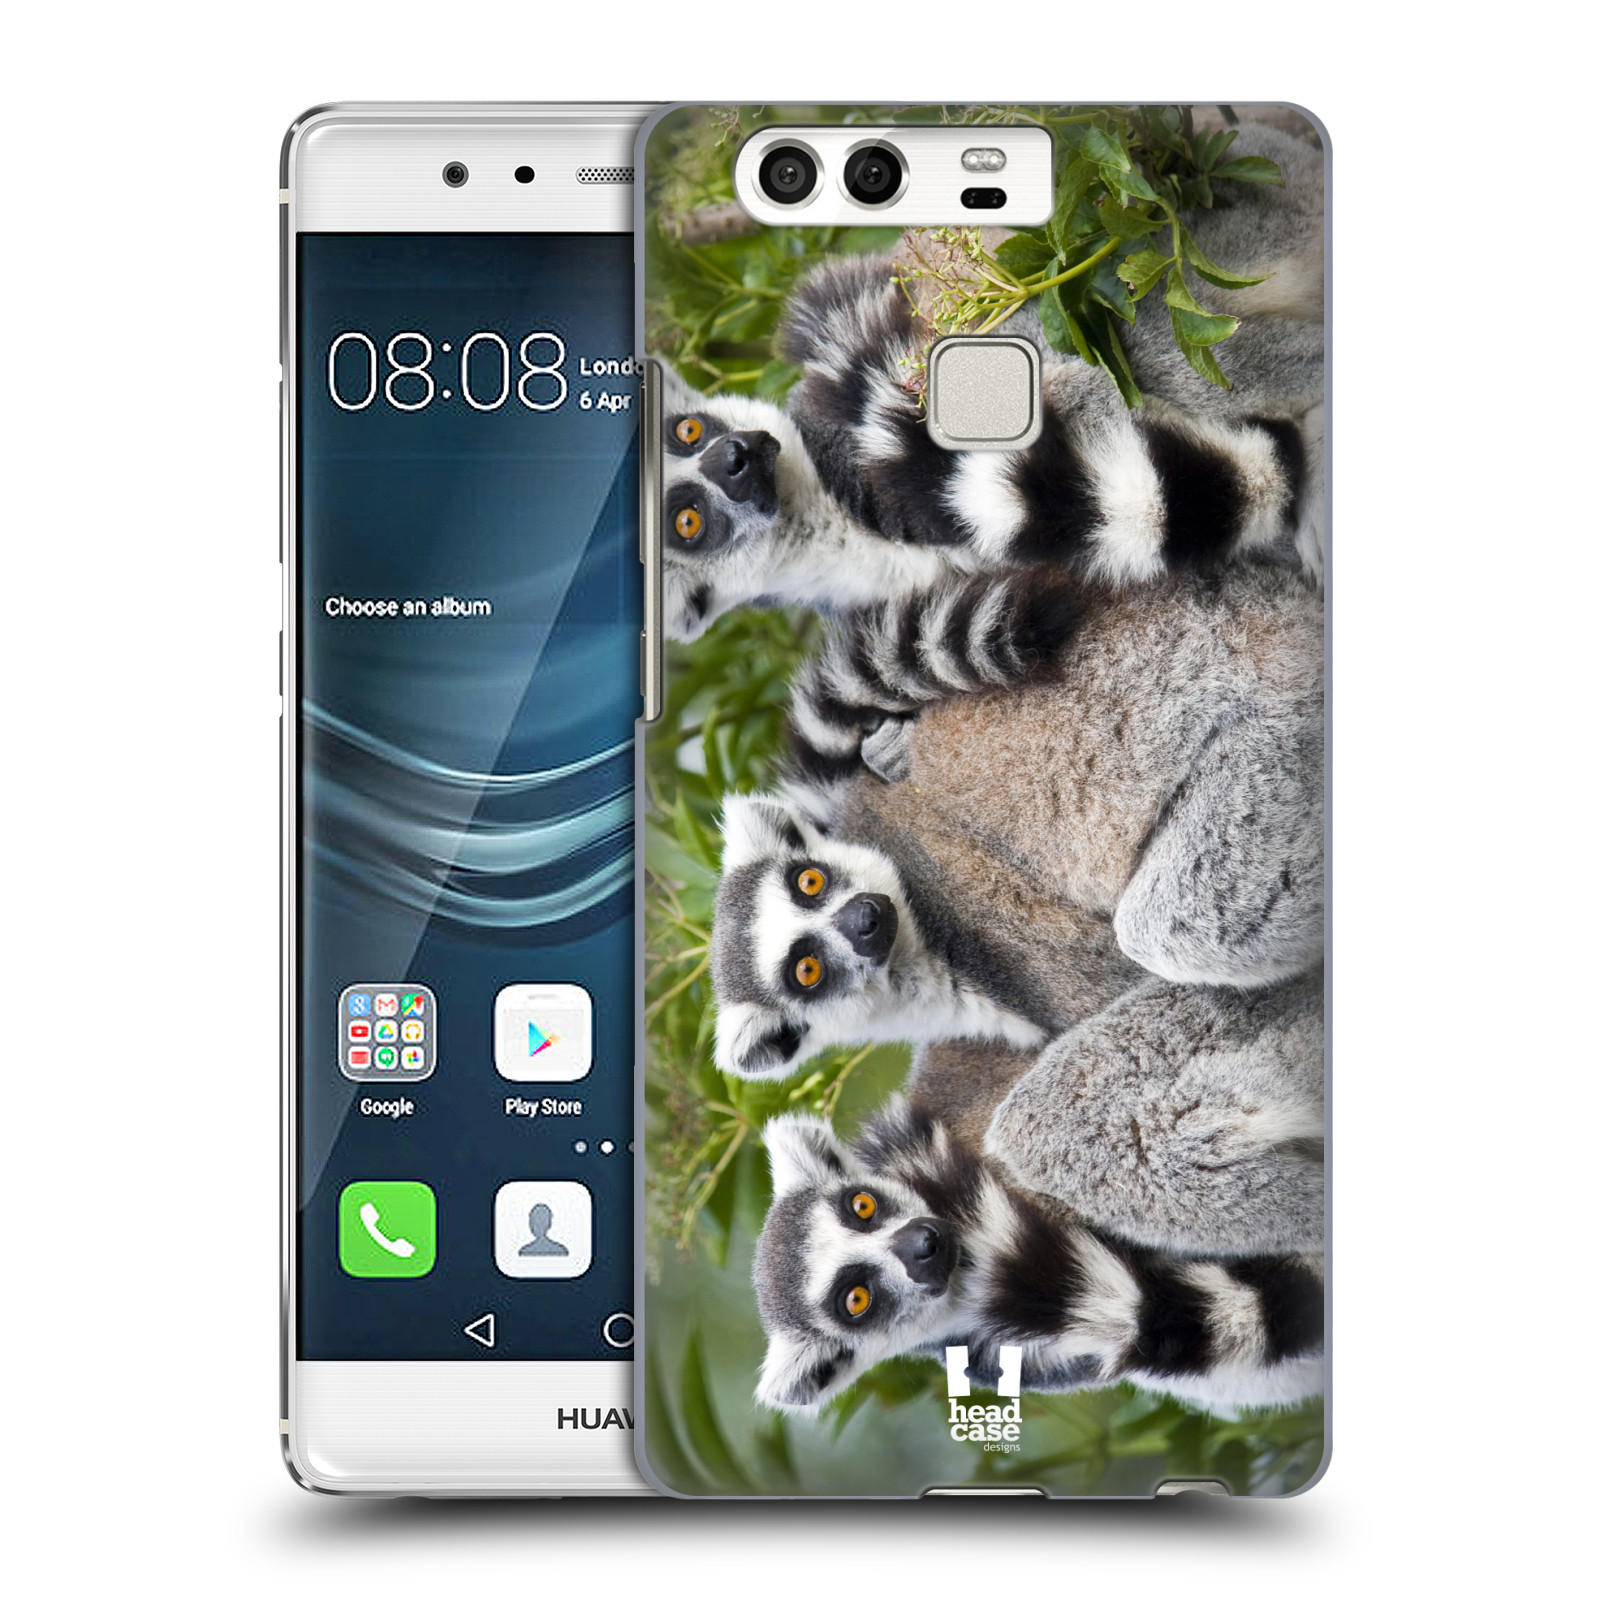 HEAD CASE plastový obal na mobil Huawei P9 / P9 DUAL SIM vzor slavná zvířata foto lemur